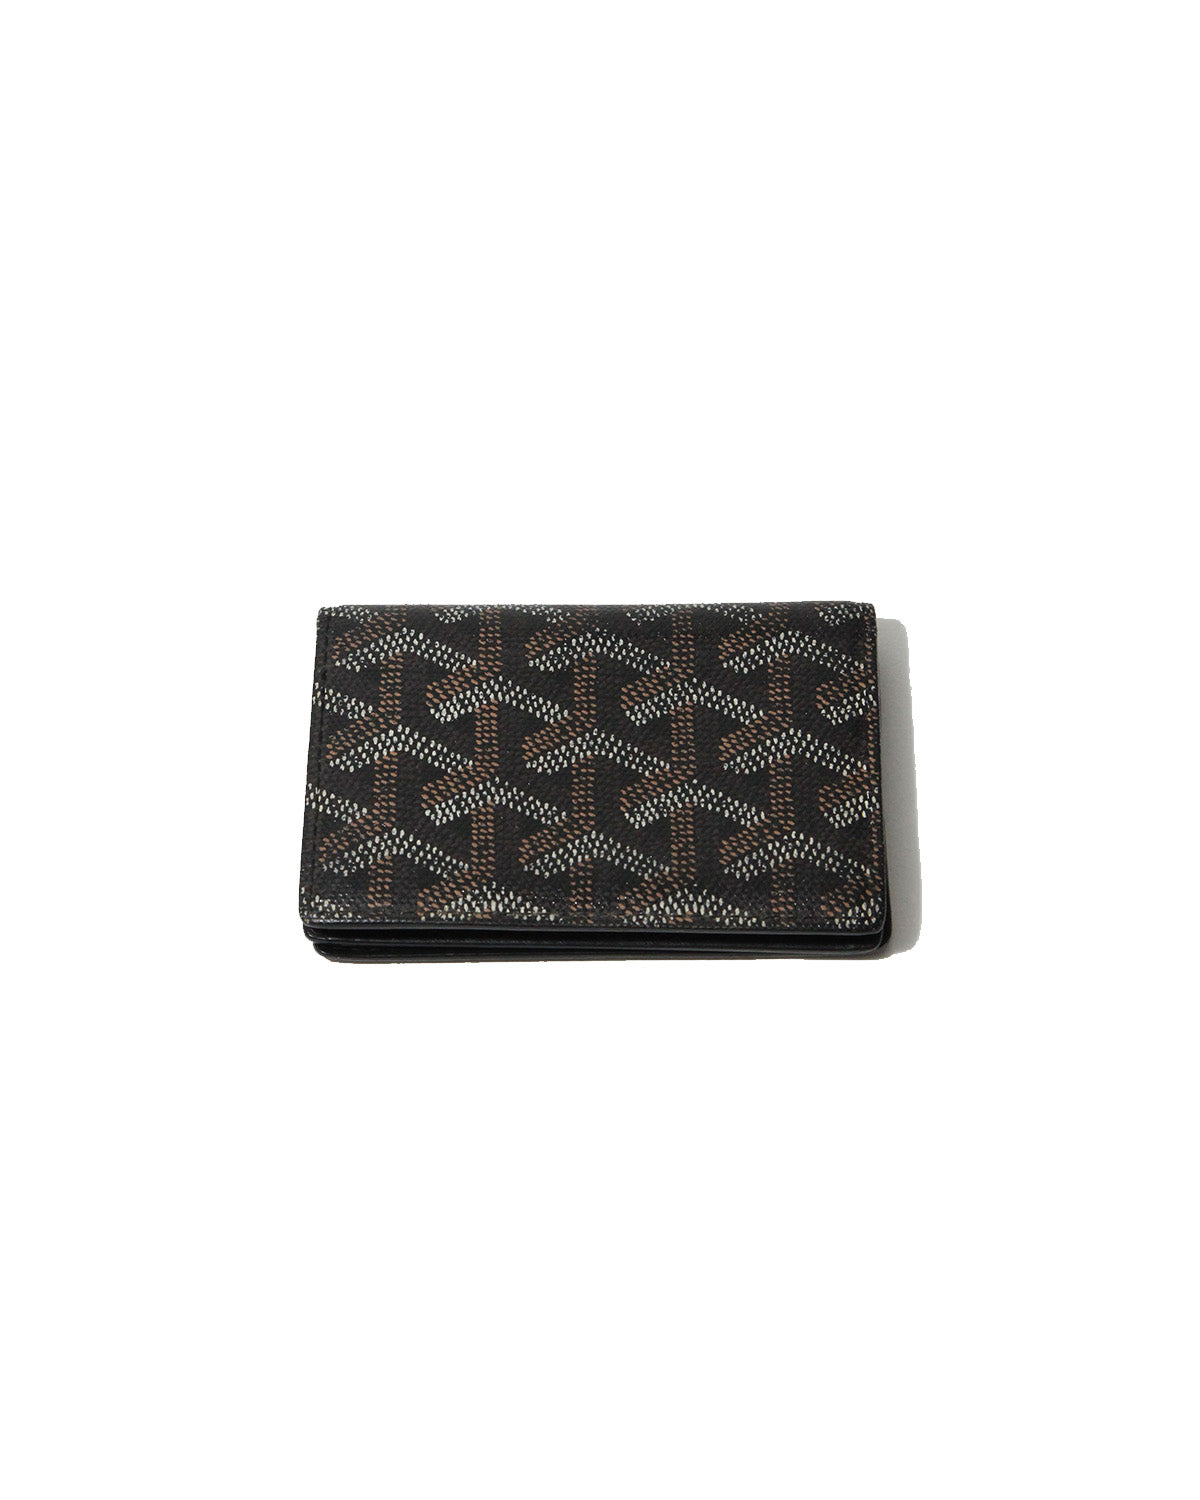 Goyard card case, Women's Fashion, Bags & Wallets, Wallets & Card